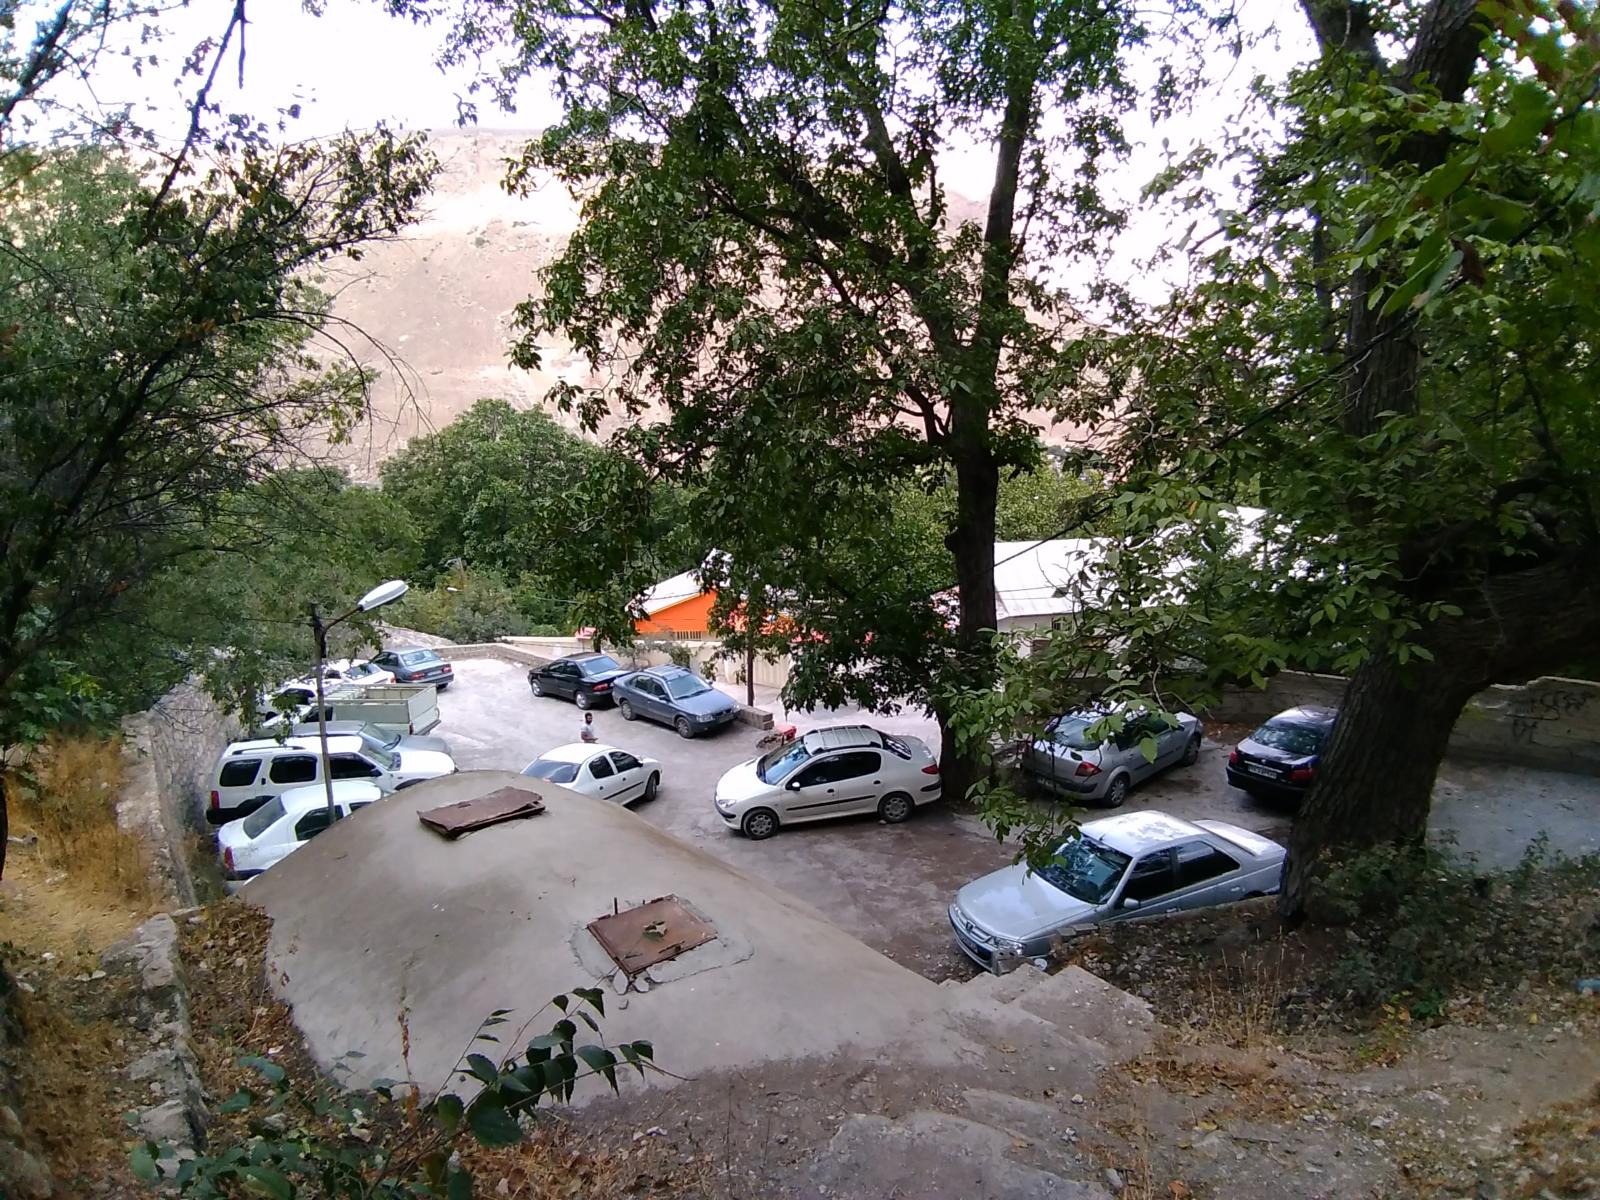 پارکینگ در روستای شاهاندشت, Parking in Shahandasht Village